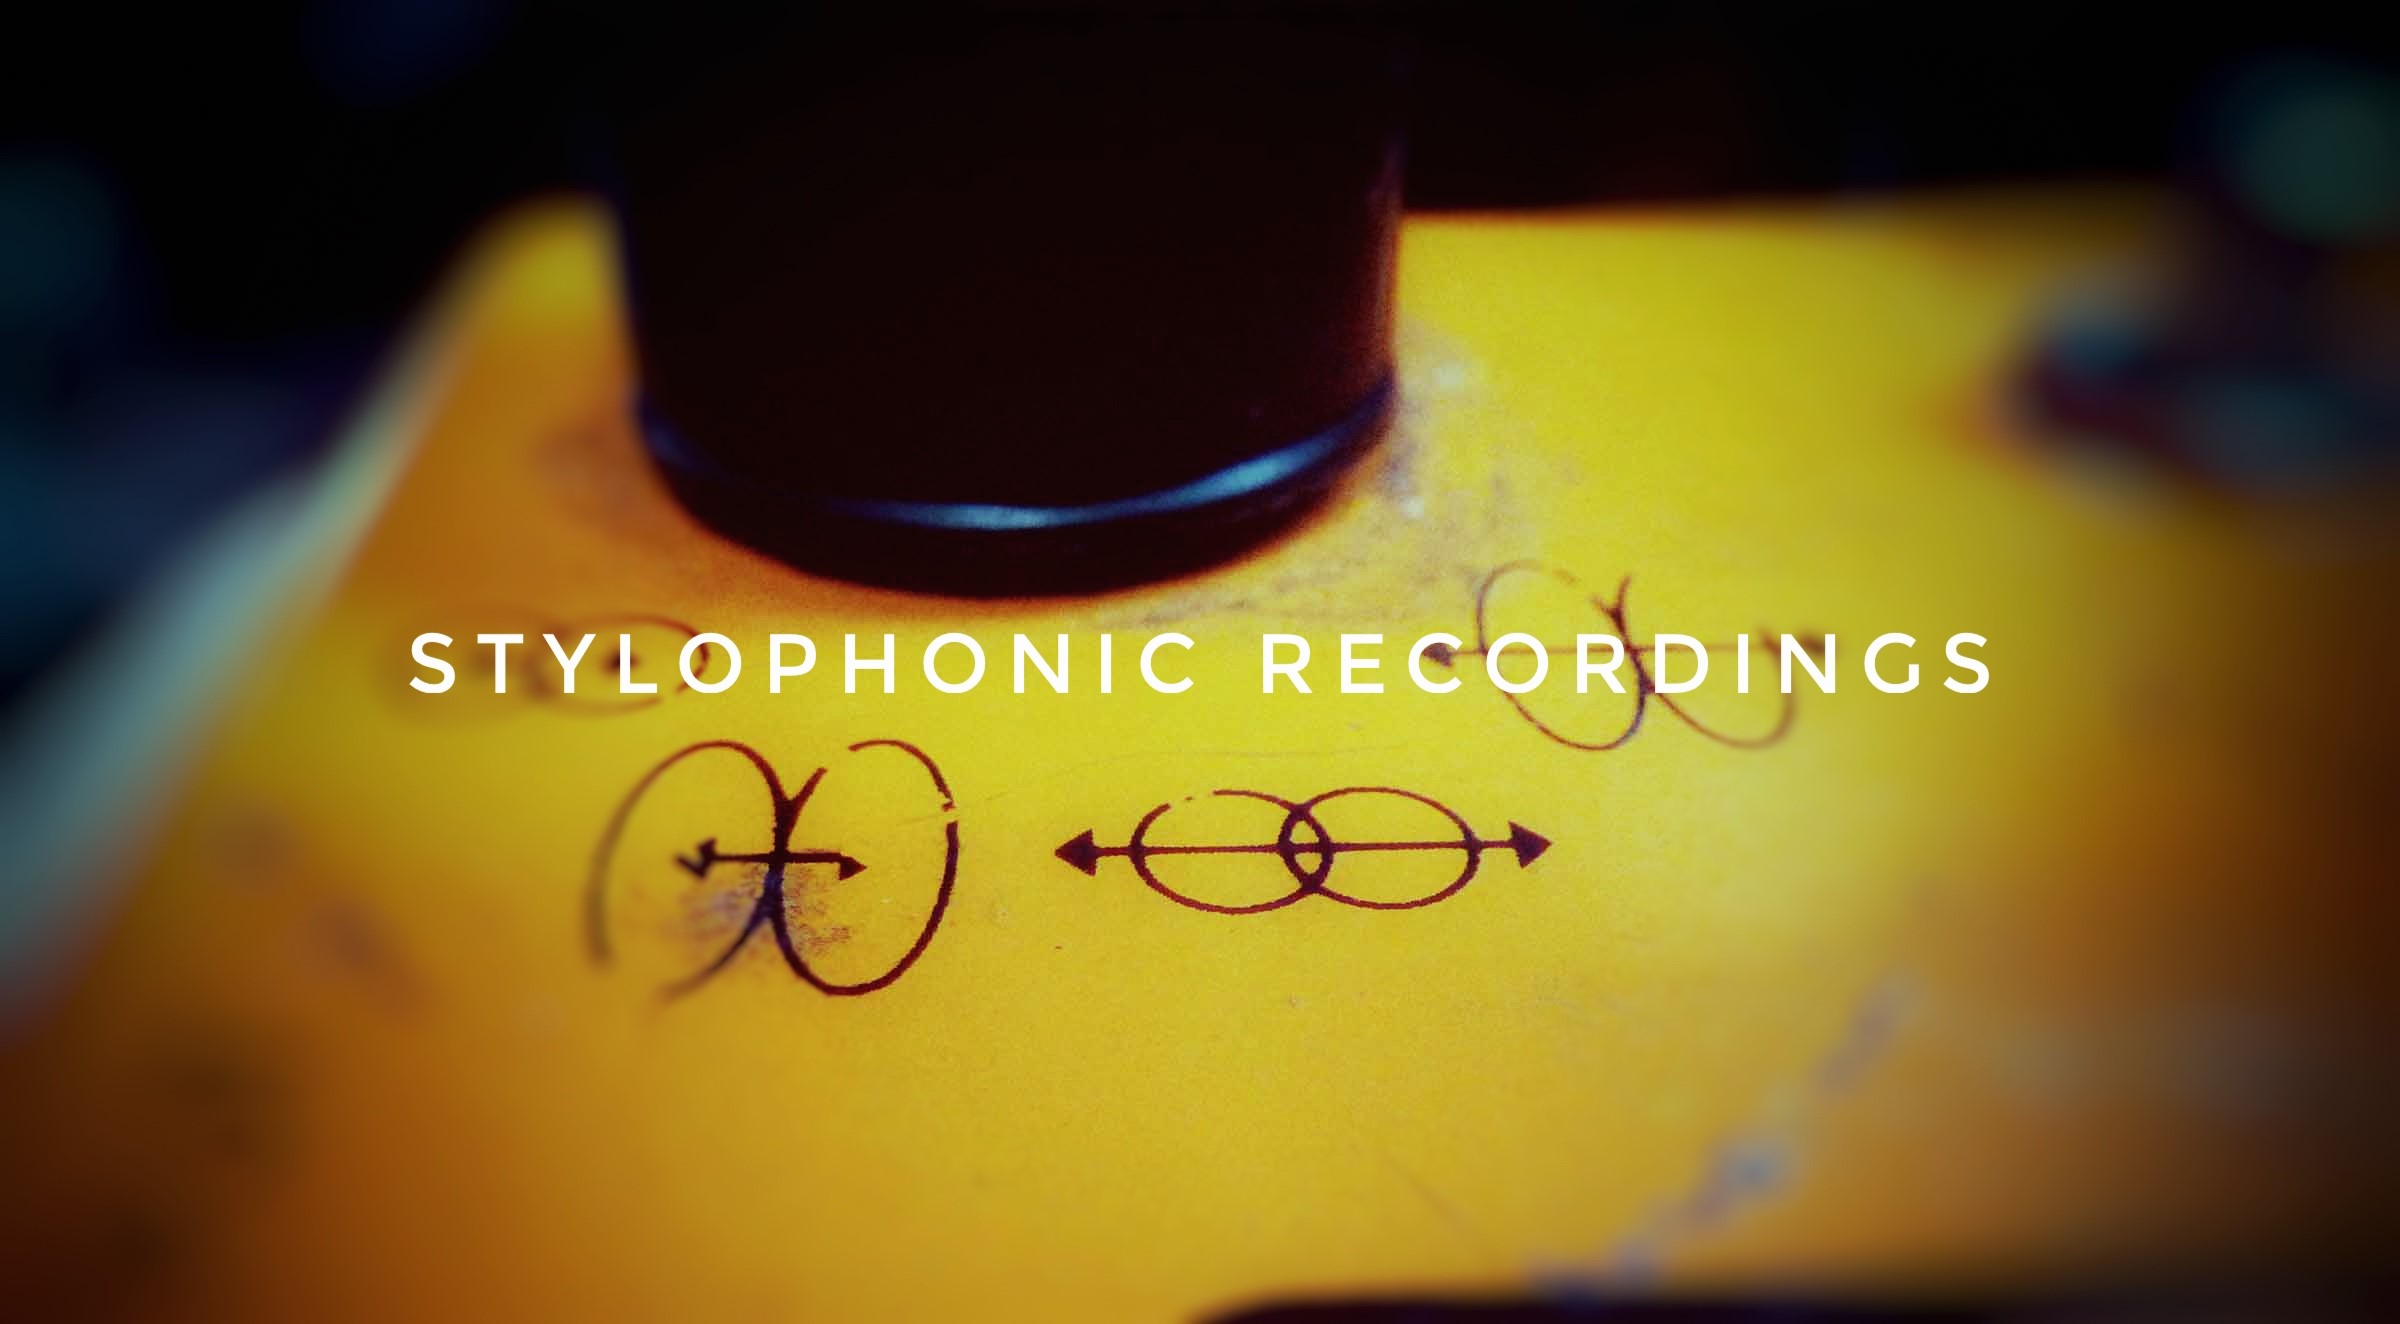 Stylophonic Recordings